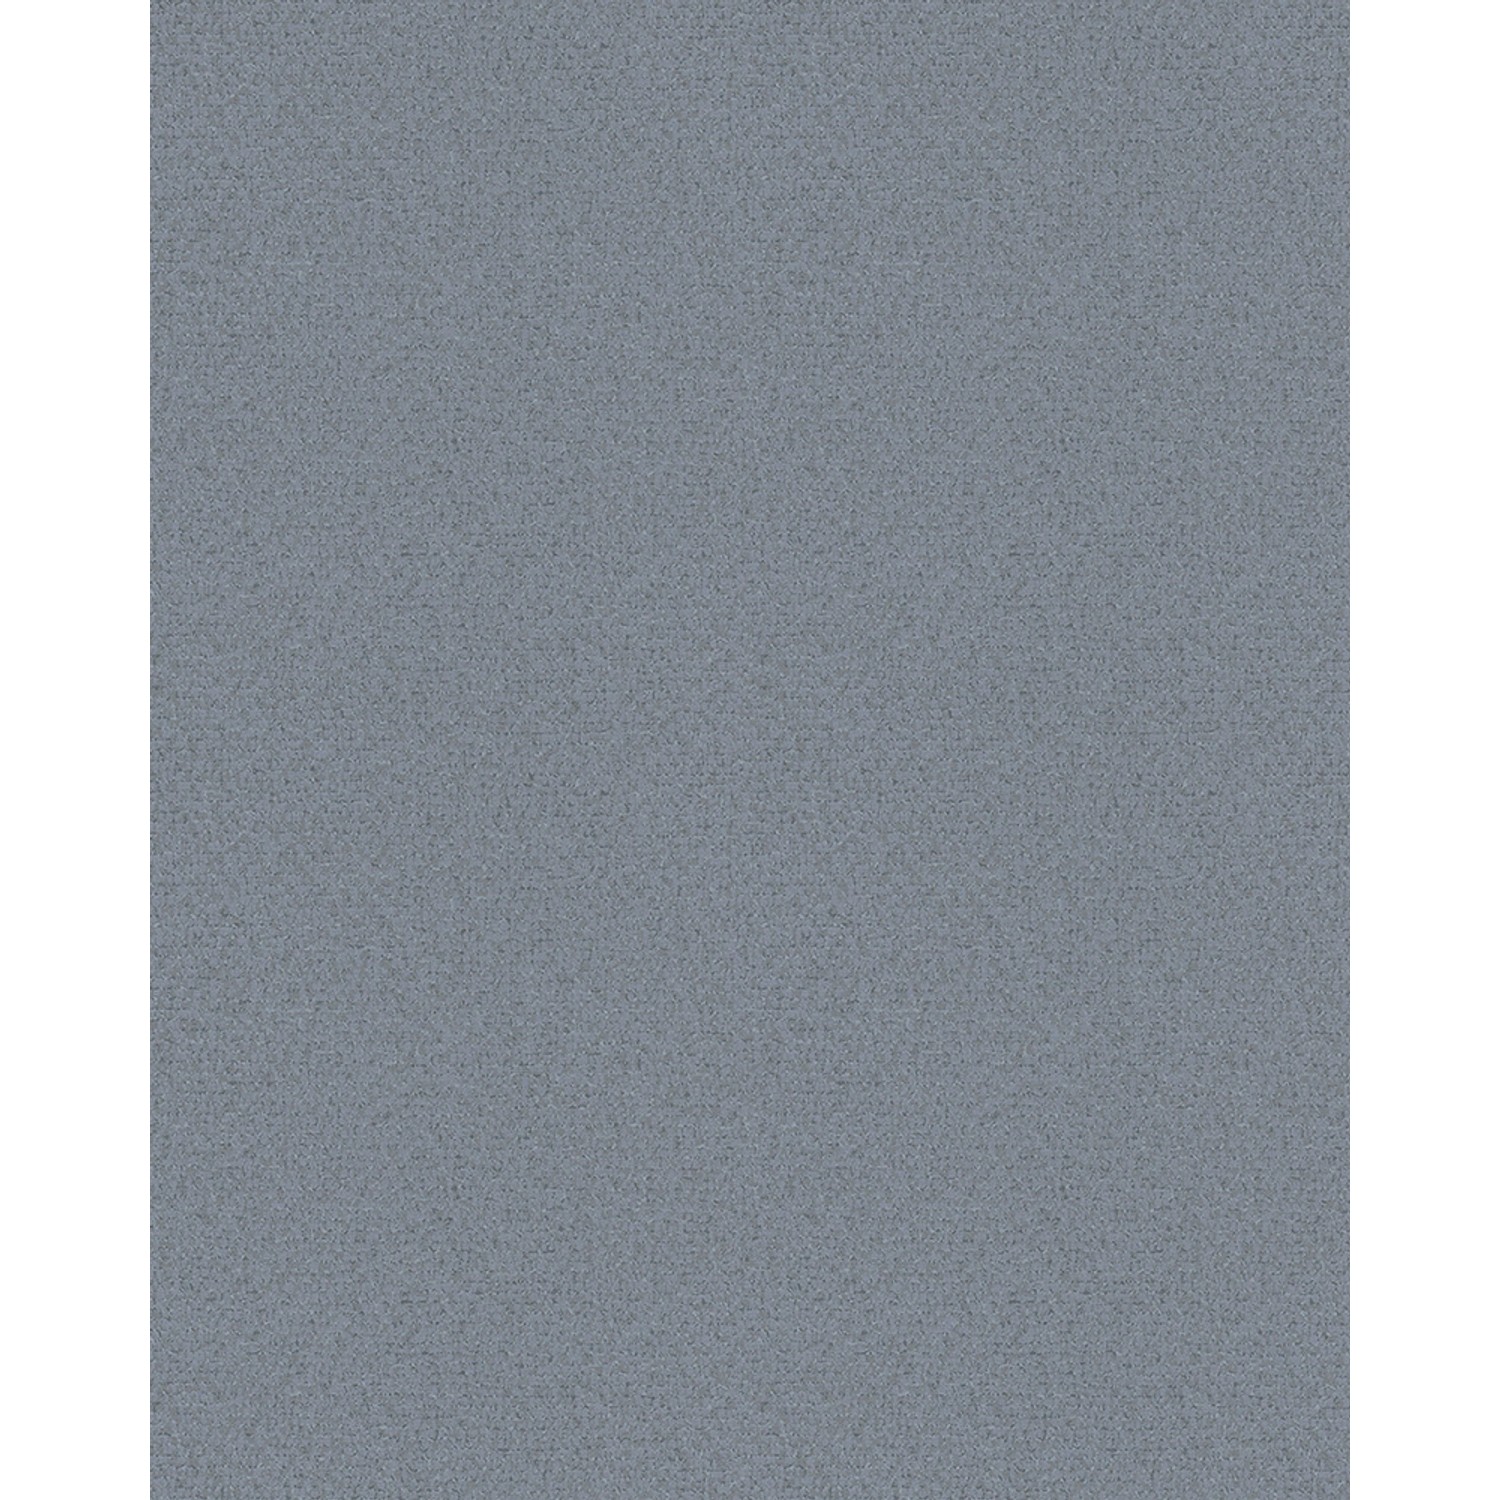 Marburg Vliestapete Strukturiert Blau-Grau 10,05 m x 0,53 m FSC® von Marburg